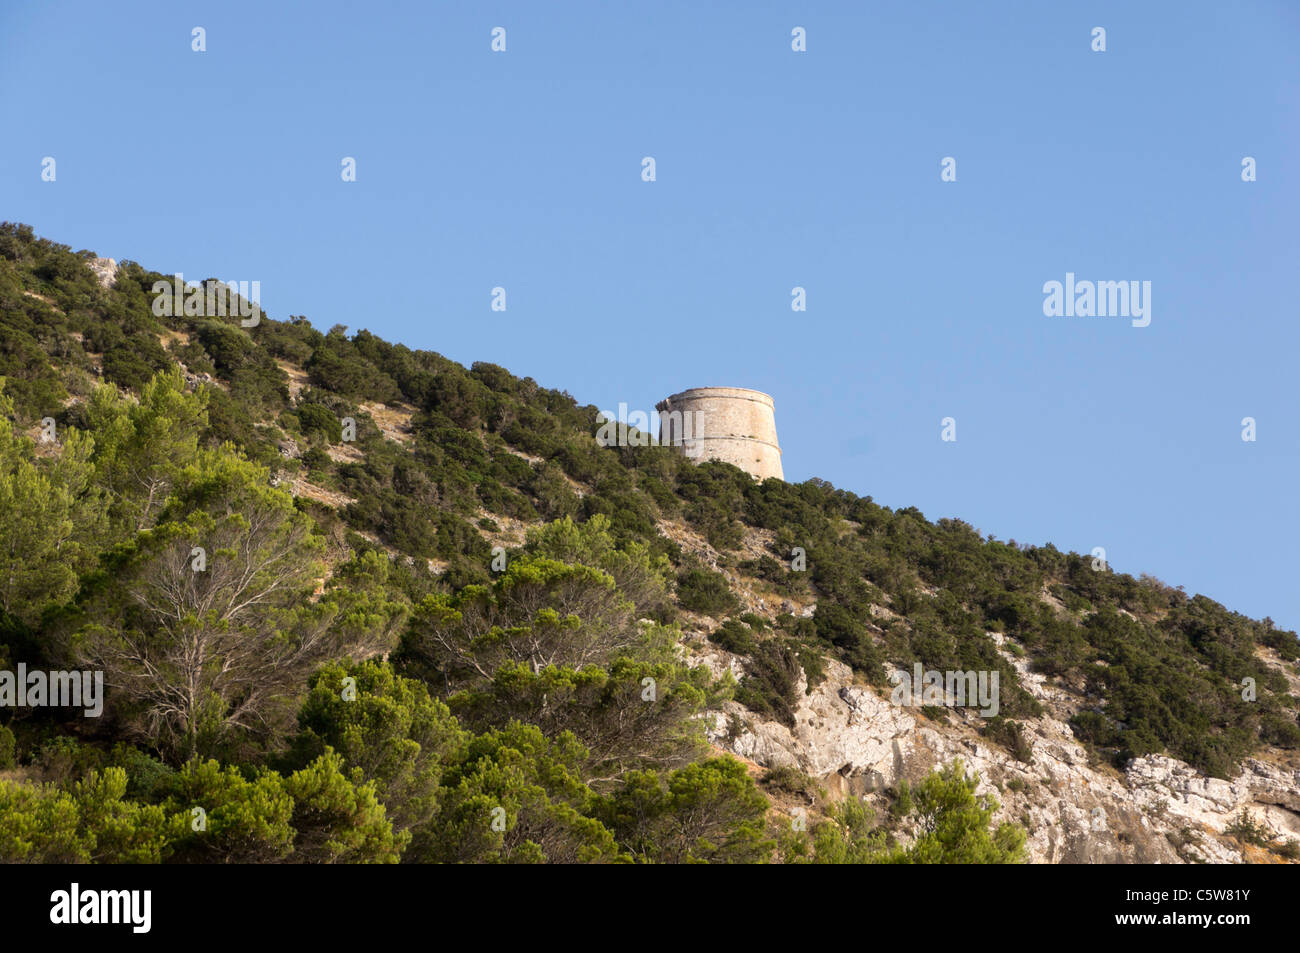 Ibiza, Balearics, Spain - Torre des Savinar, Puig des Savinar, landmark tower. Stock Photo